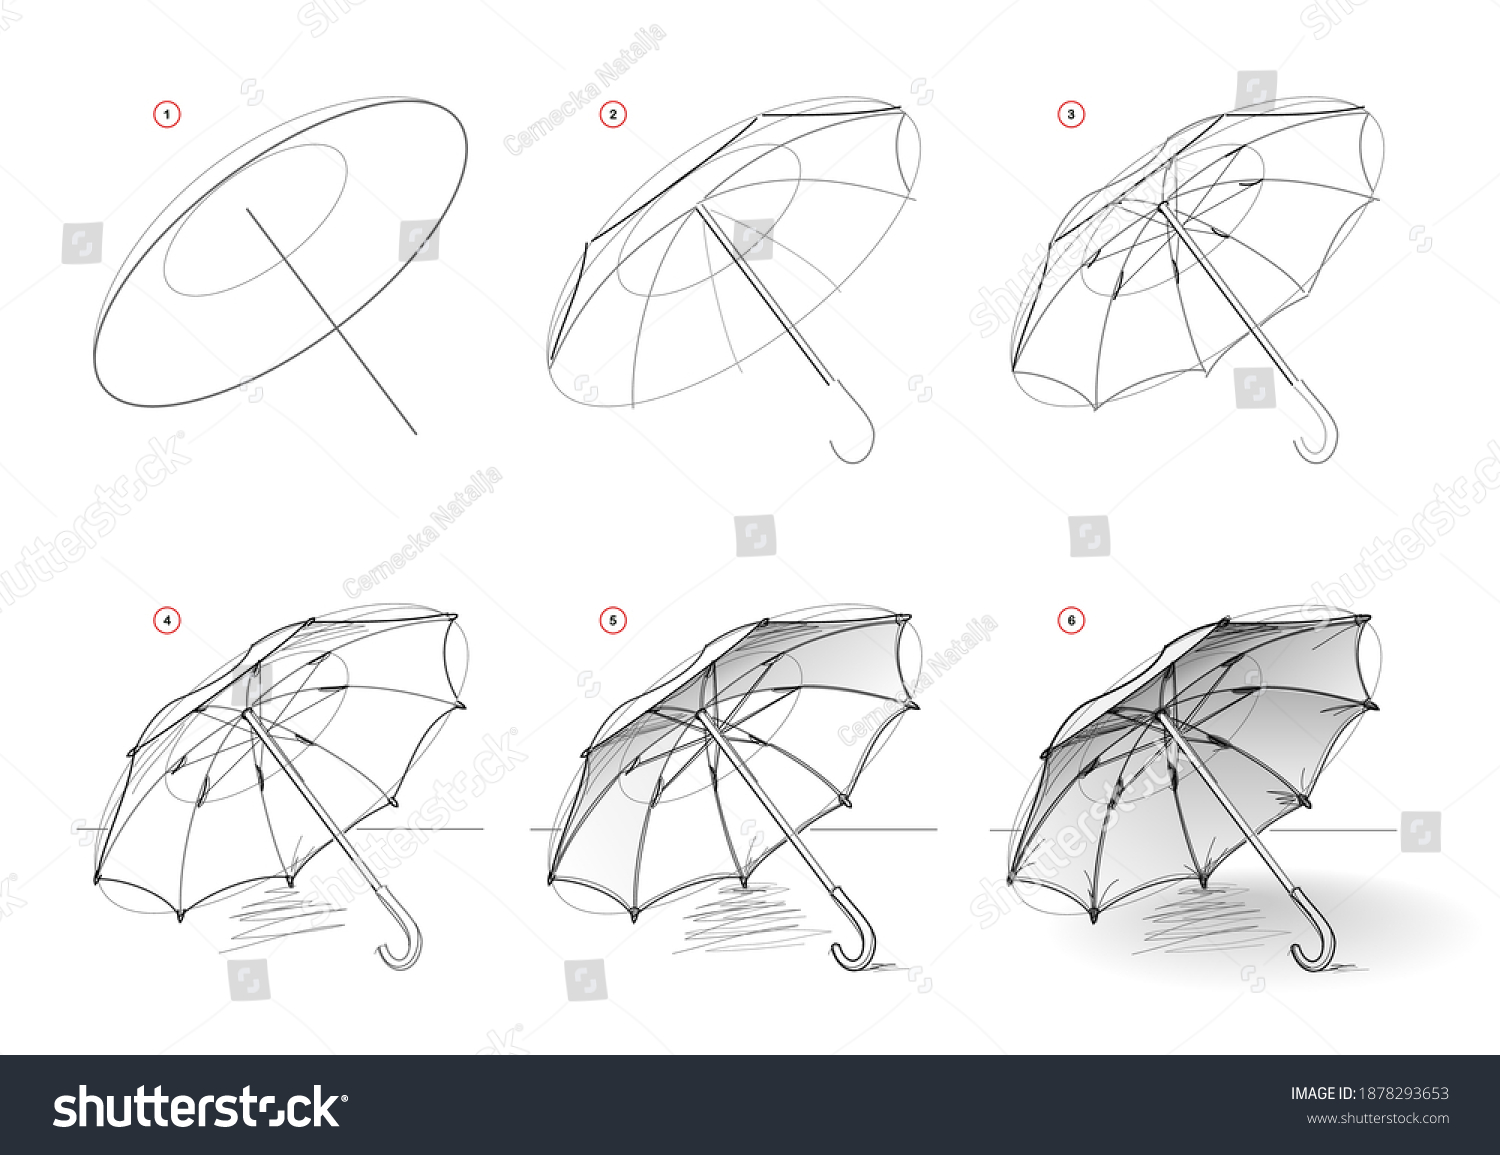 Поисковый эскиз на примере зонтика